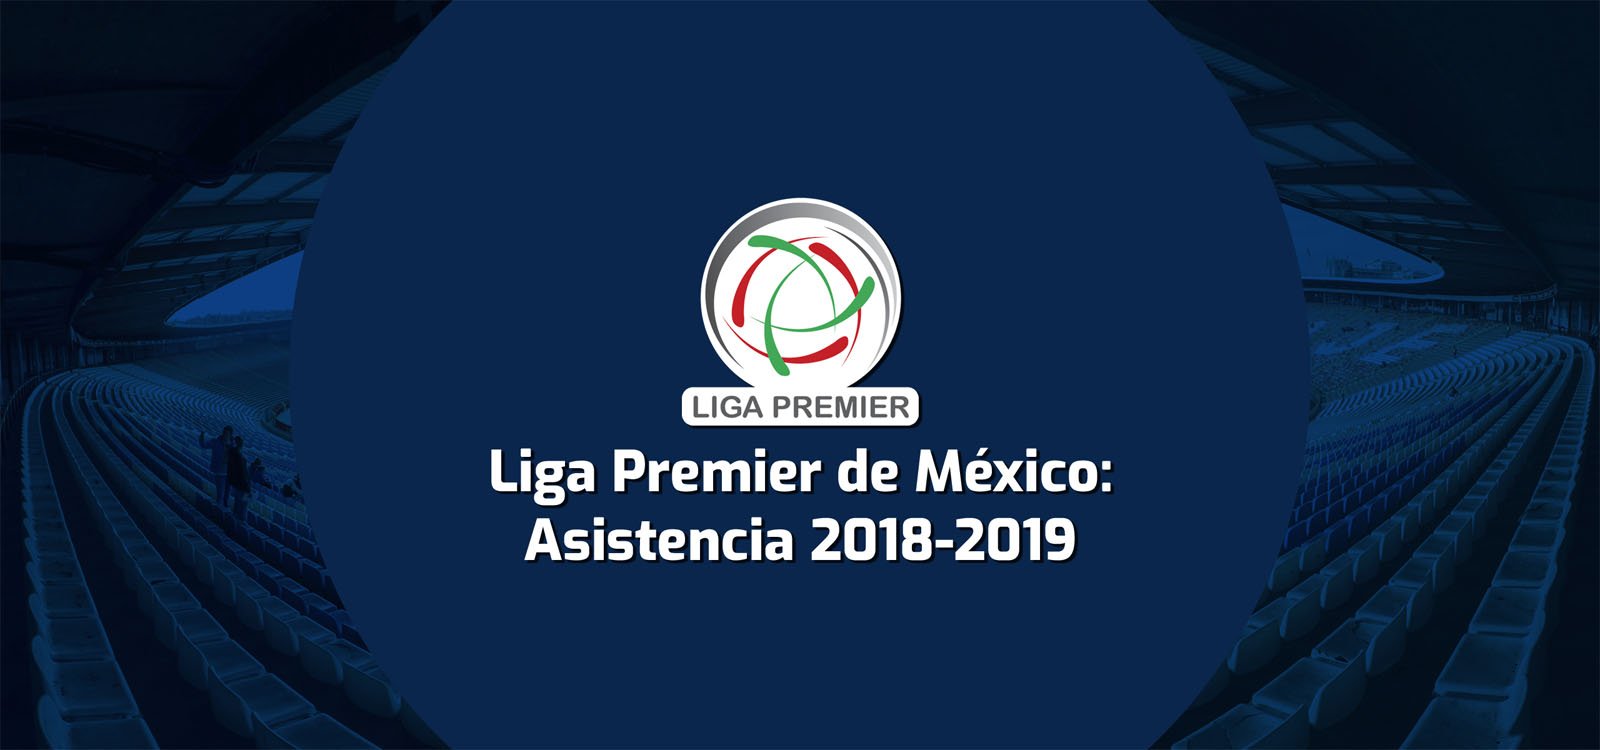 Asistencia 2018-2019 de la Liga Premier de México